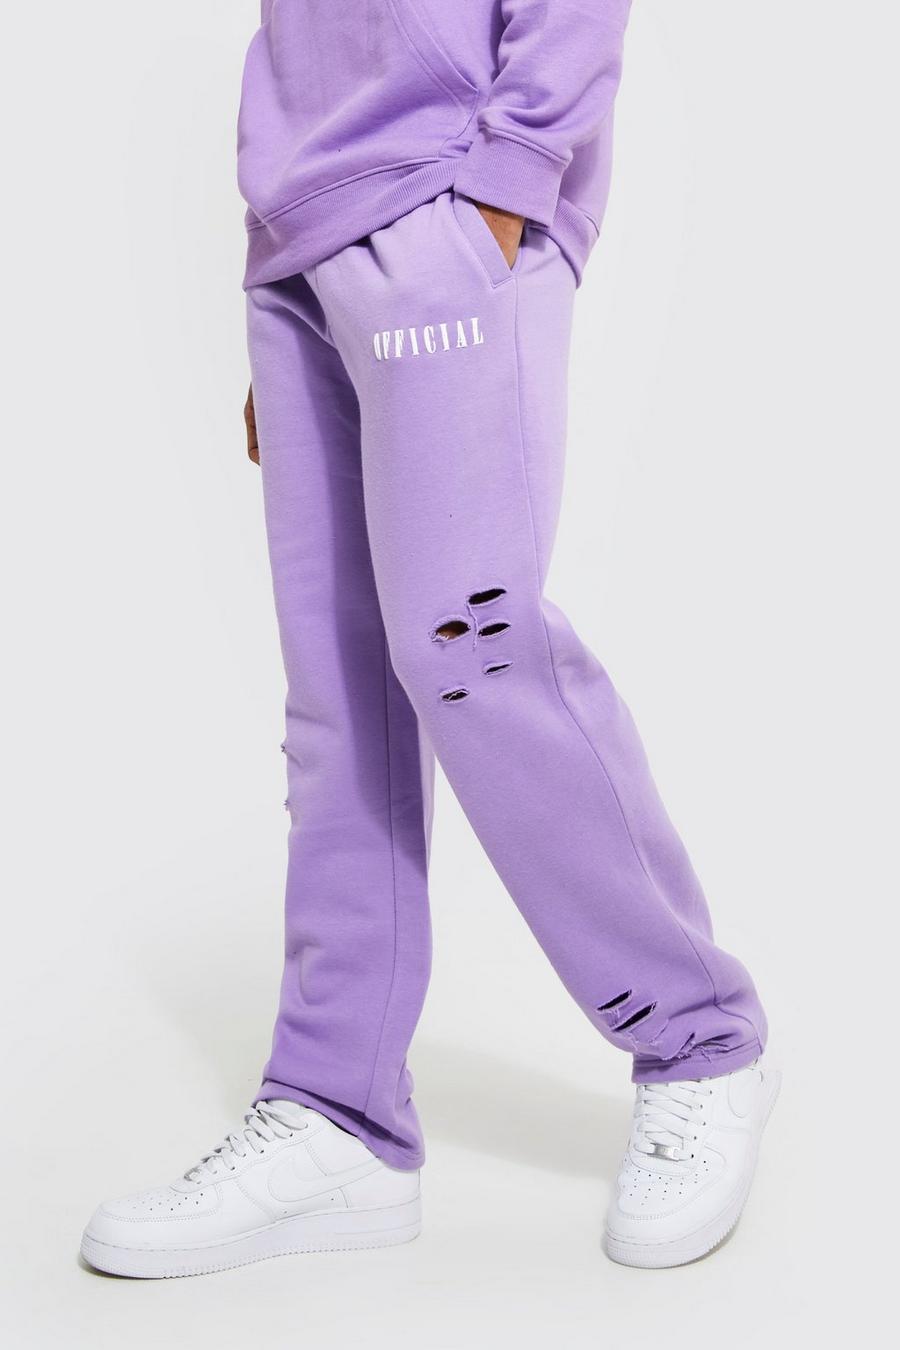 Zerrissene Oversize Official Jogginghose mit weitem Bein, Lilac violett